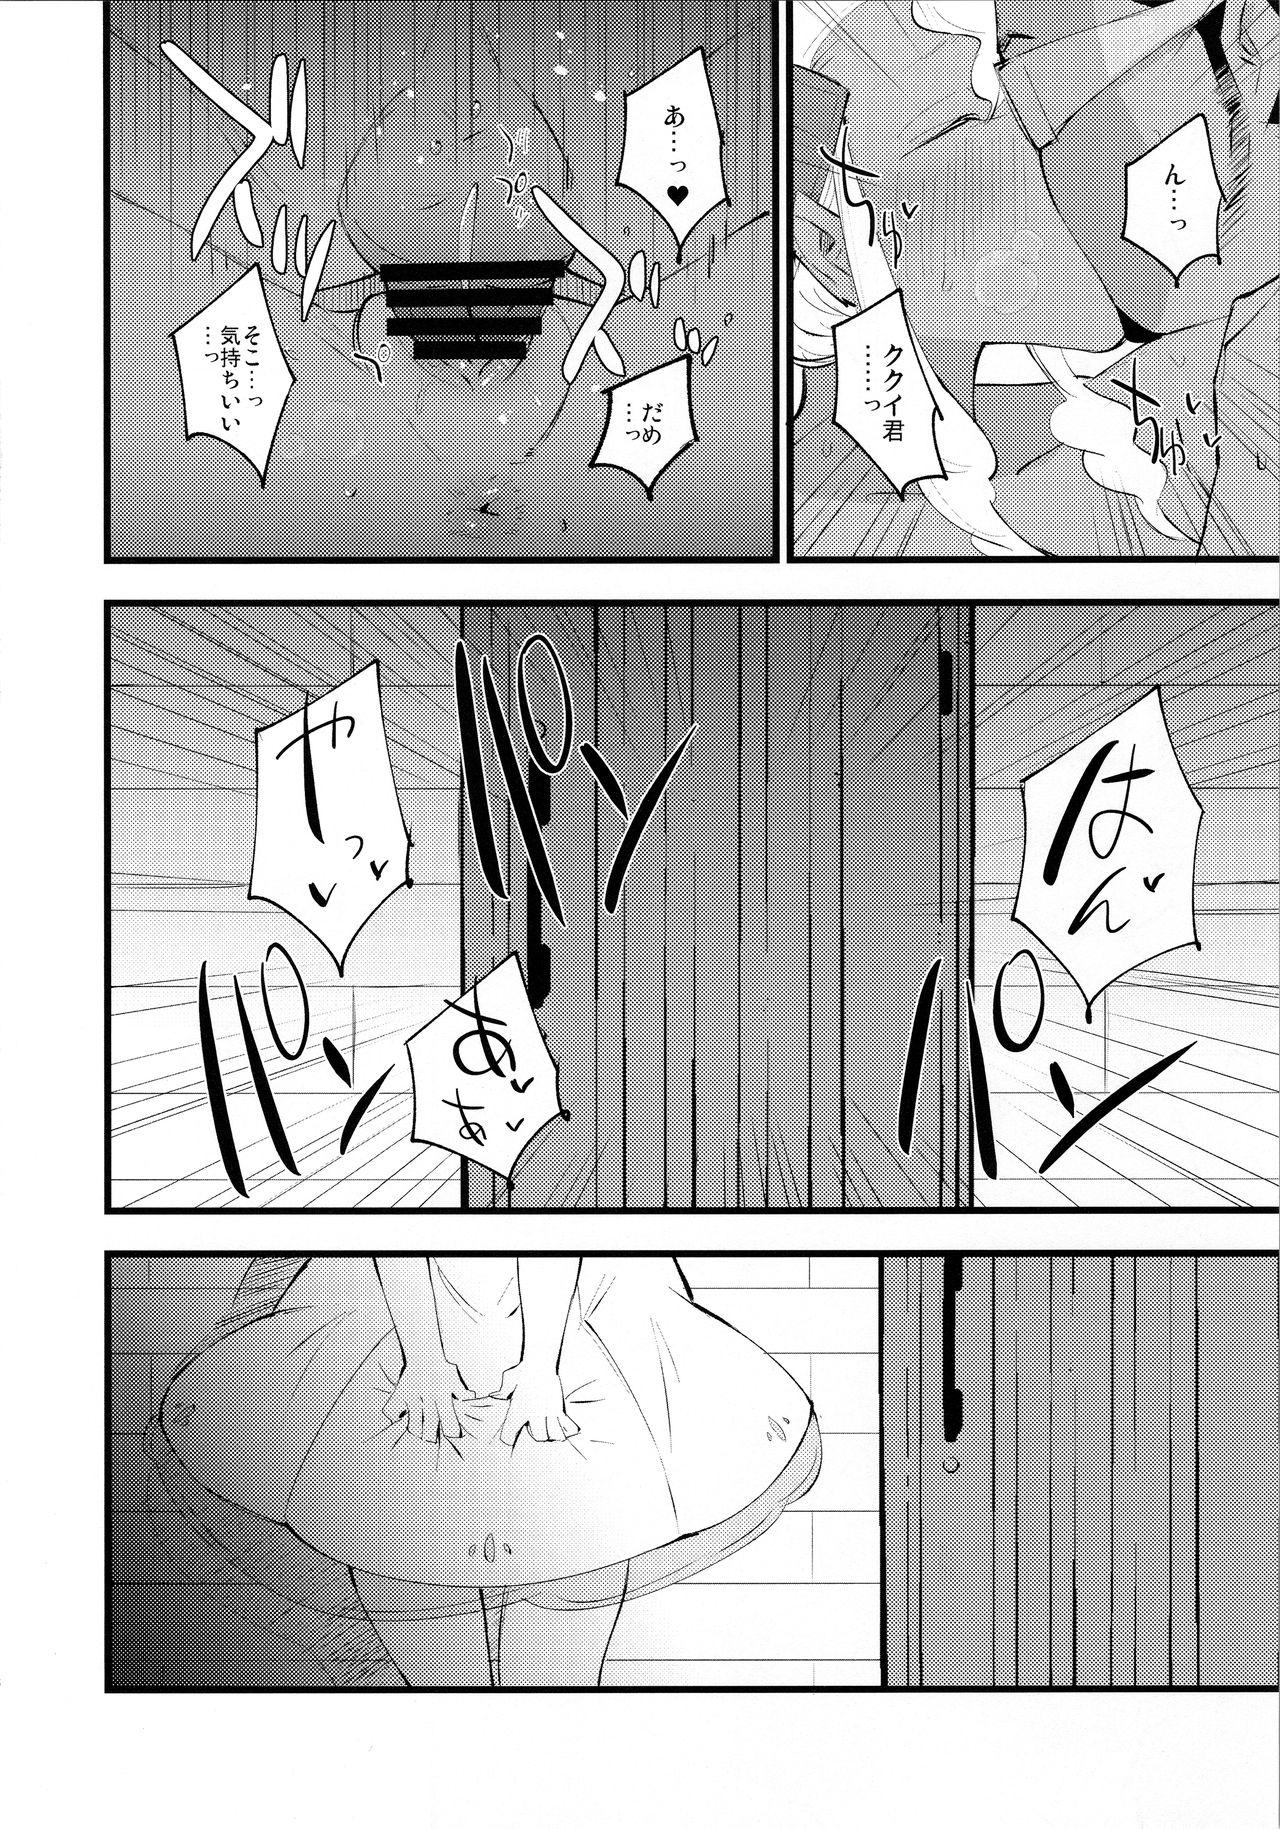 Celeb Hakase no Yoru no Joshu. 3 - Pokemon Tight - Page 5